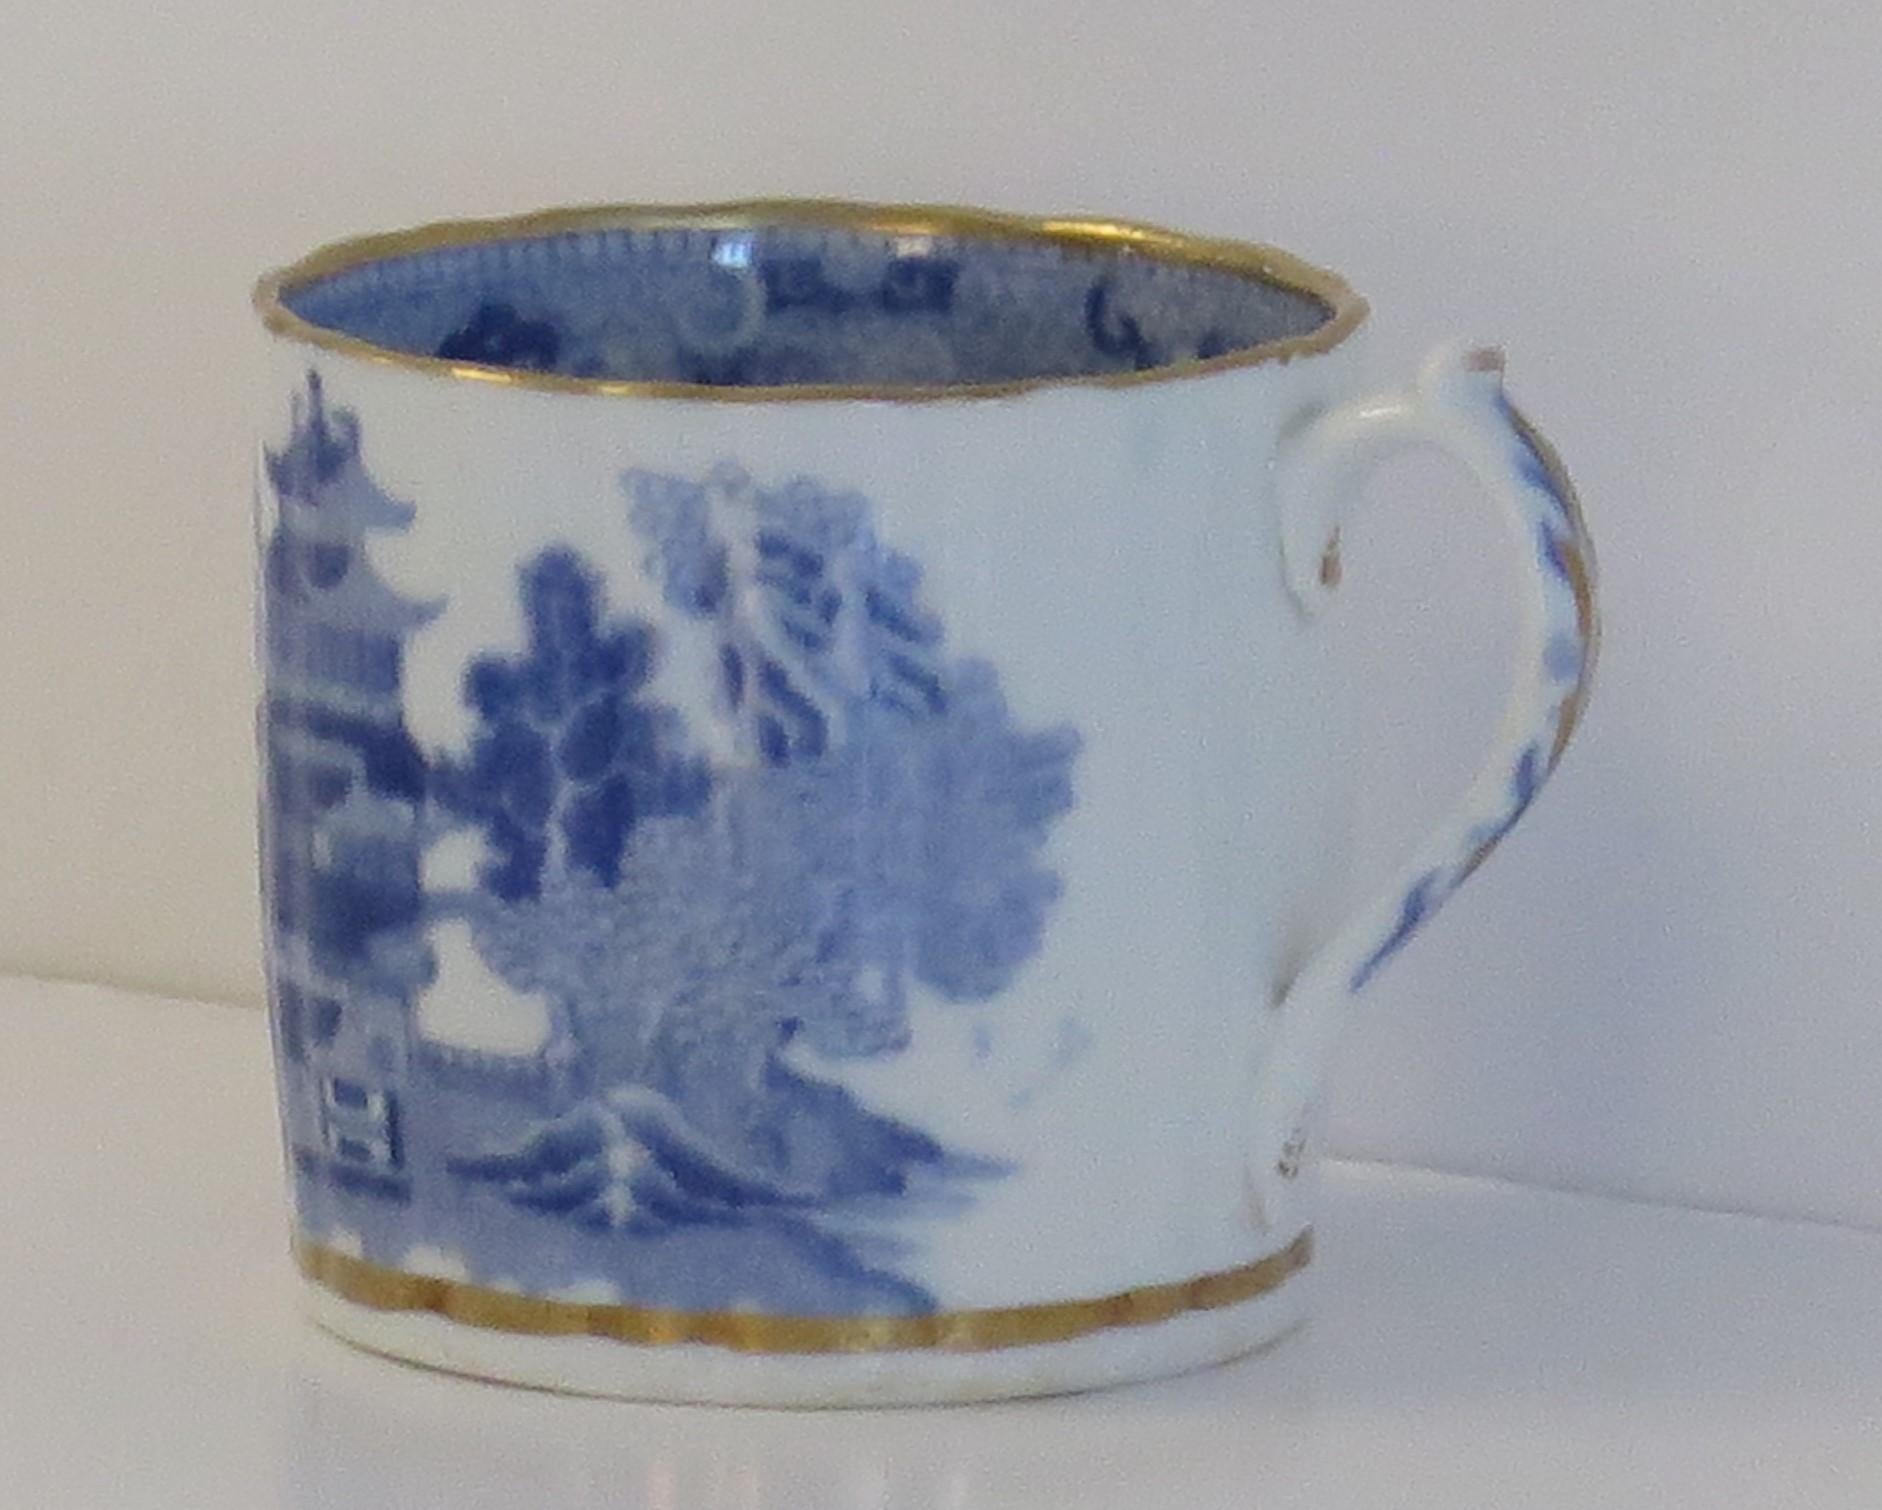 Es handelt sich um eine blau-weiße, vergoldete Kaffeekanne aus Porzellan, die von Miles Mason (Mason's), Staffordshire Potteries, im frühen 19. Jahrhundert aus der Zeit des George 111, ca. 1805-1810, hergestellt wurde.

Das Stück ist gut getöpfert